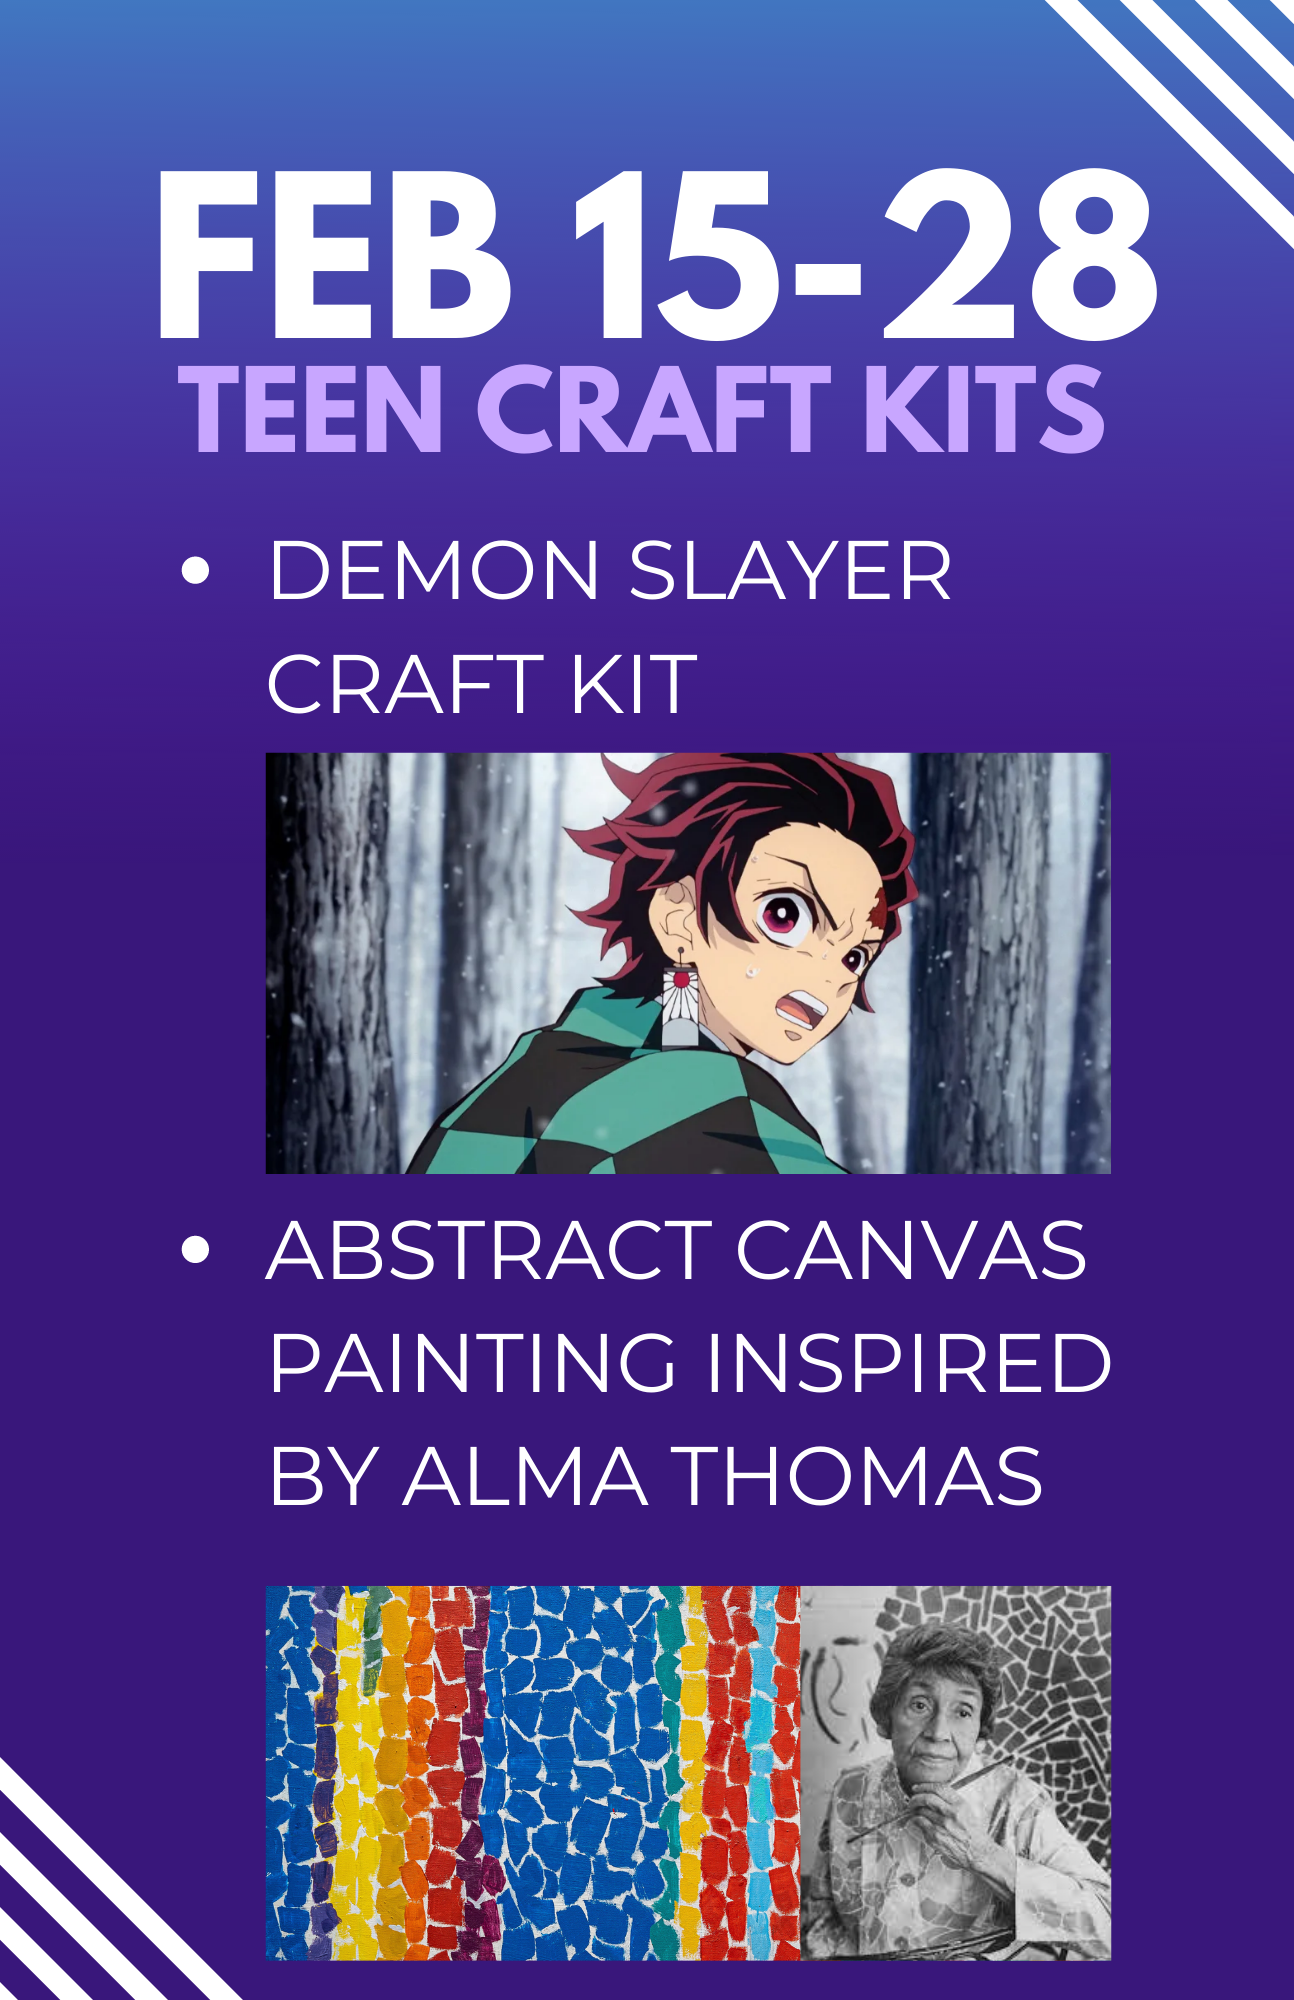 feb 15 craft kits